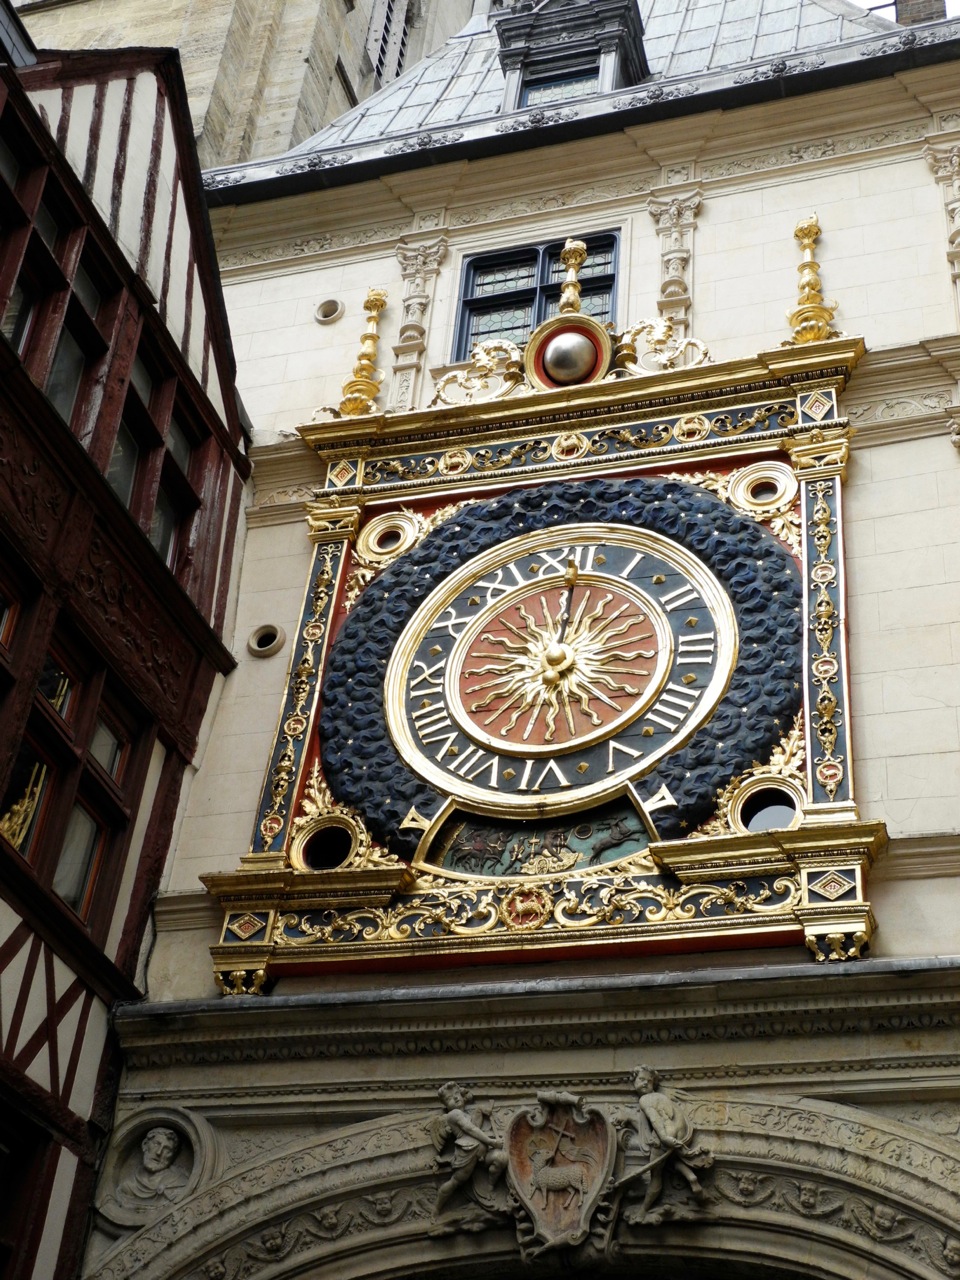 Rouen's Gros Horloge has been in its present location since 1529